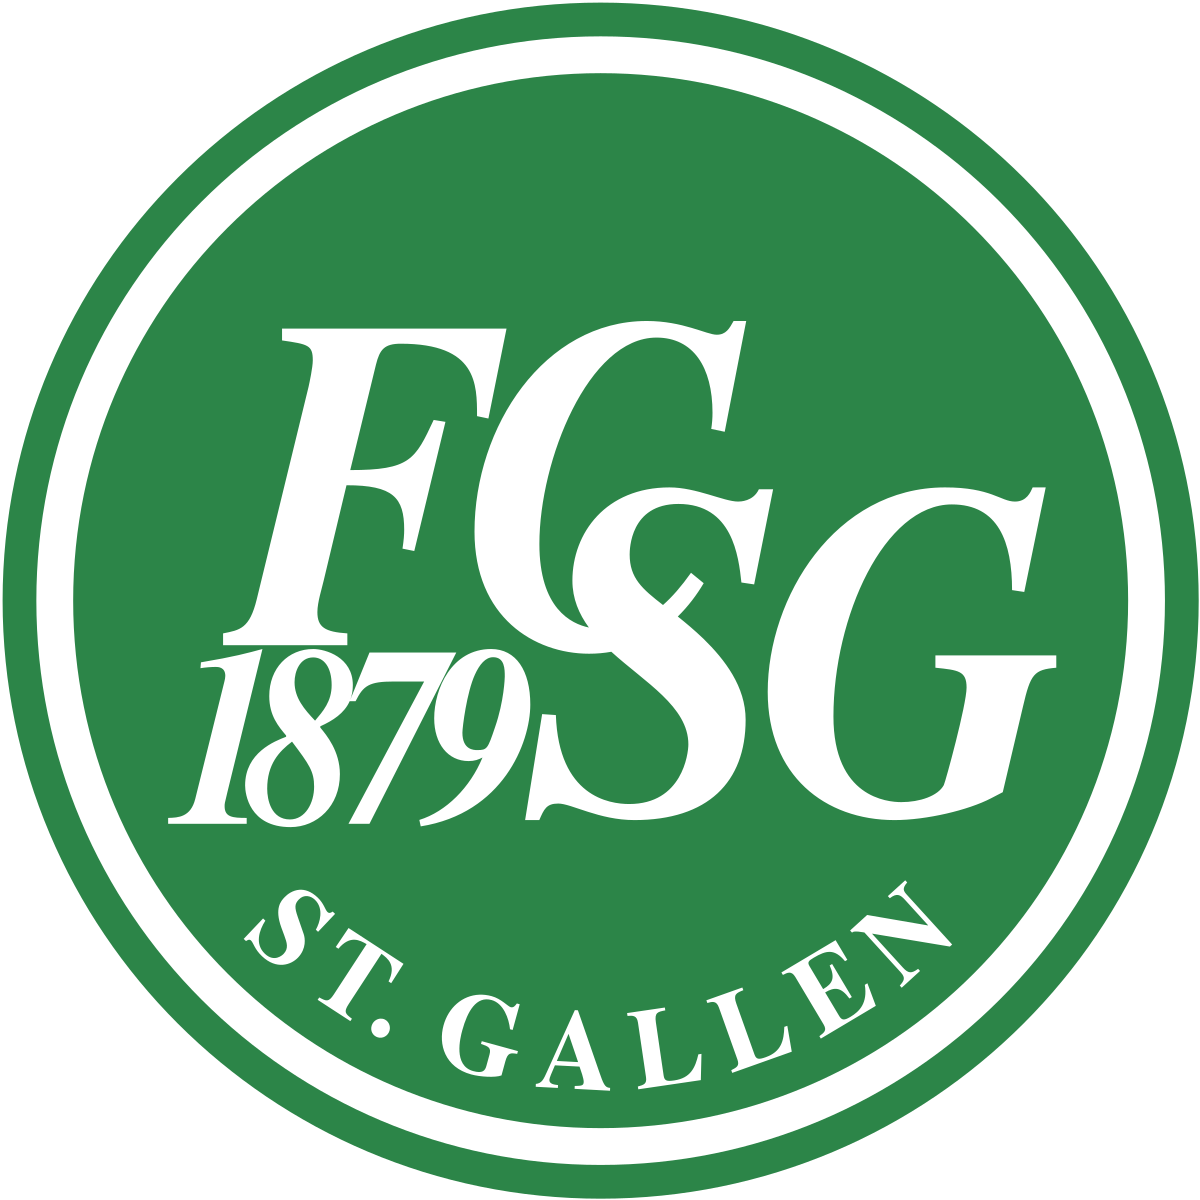 St Gallen Fußball